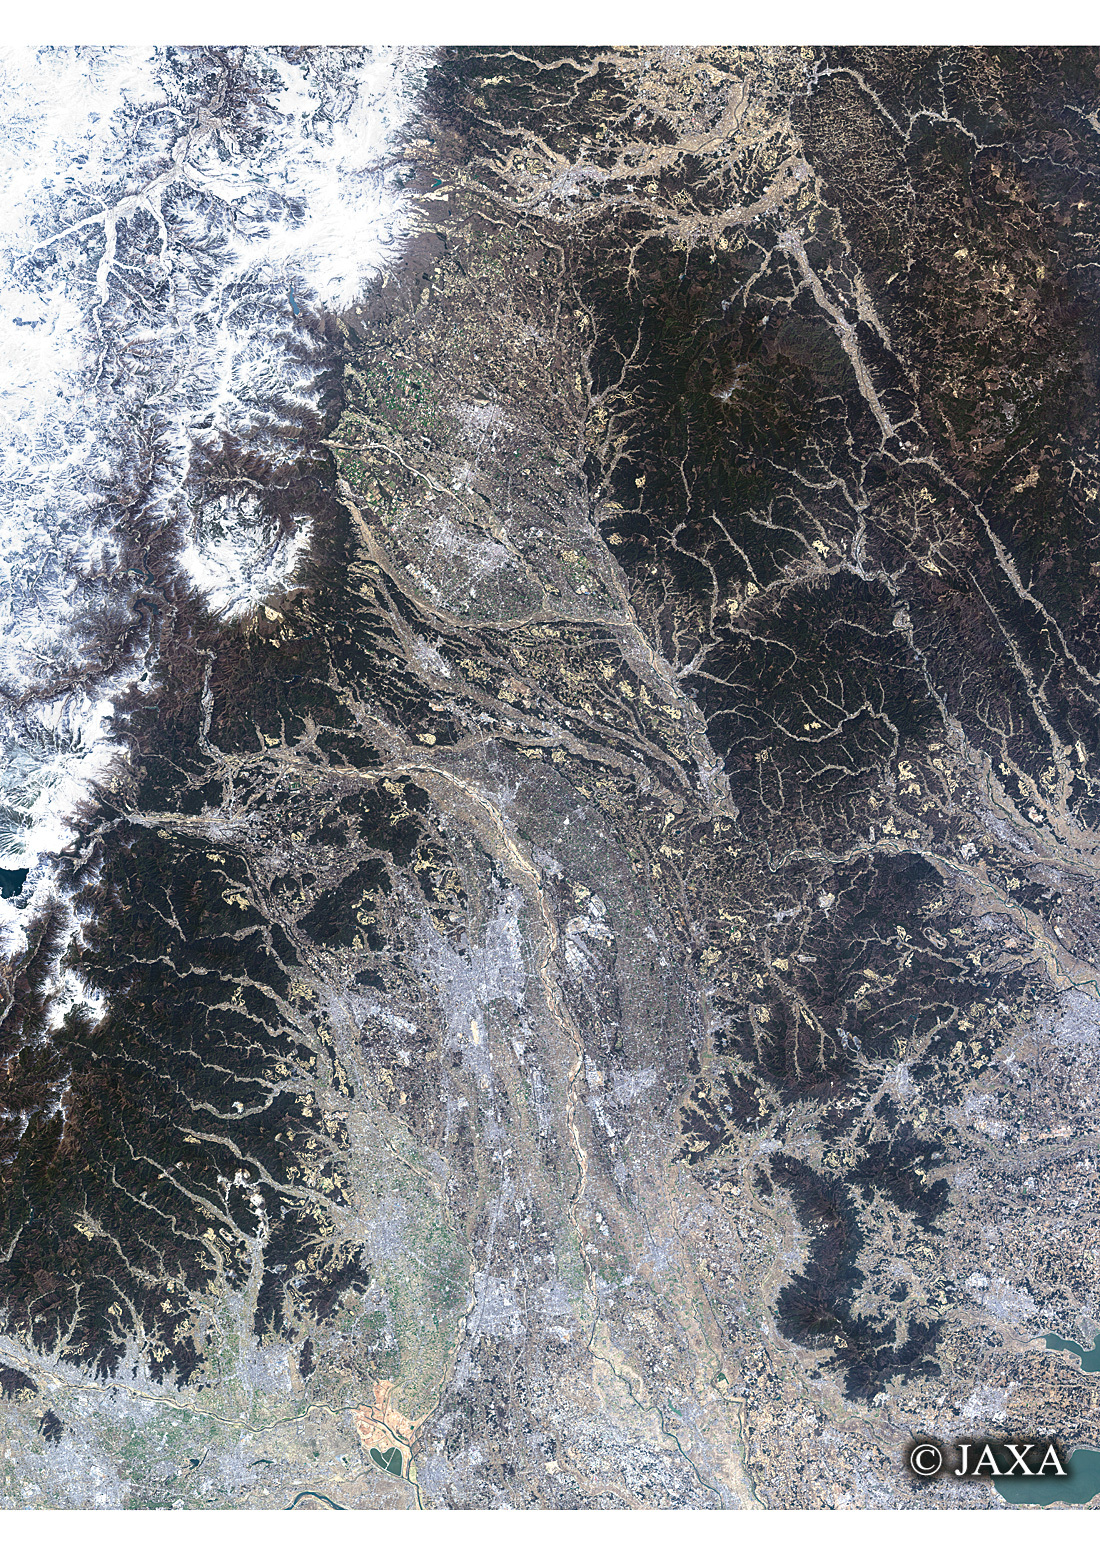 だいちから見た日本の都市 栃木県:衛星画像